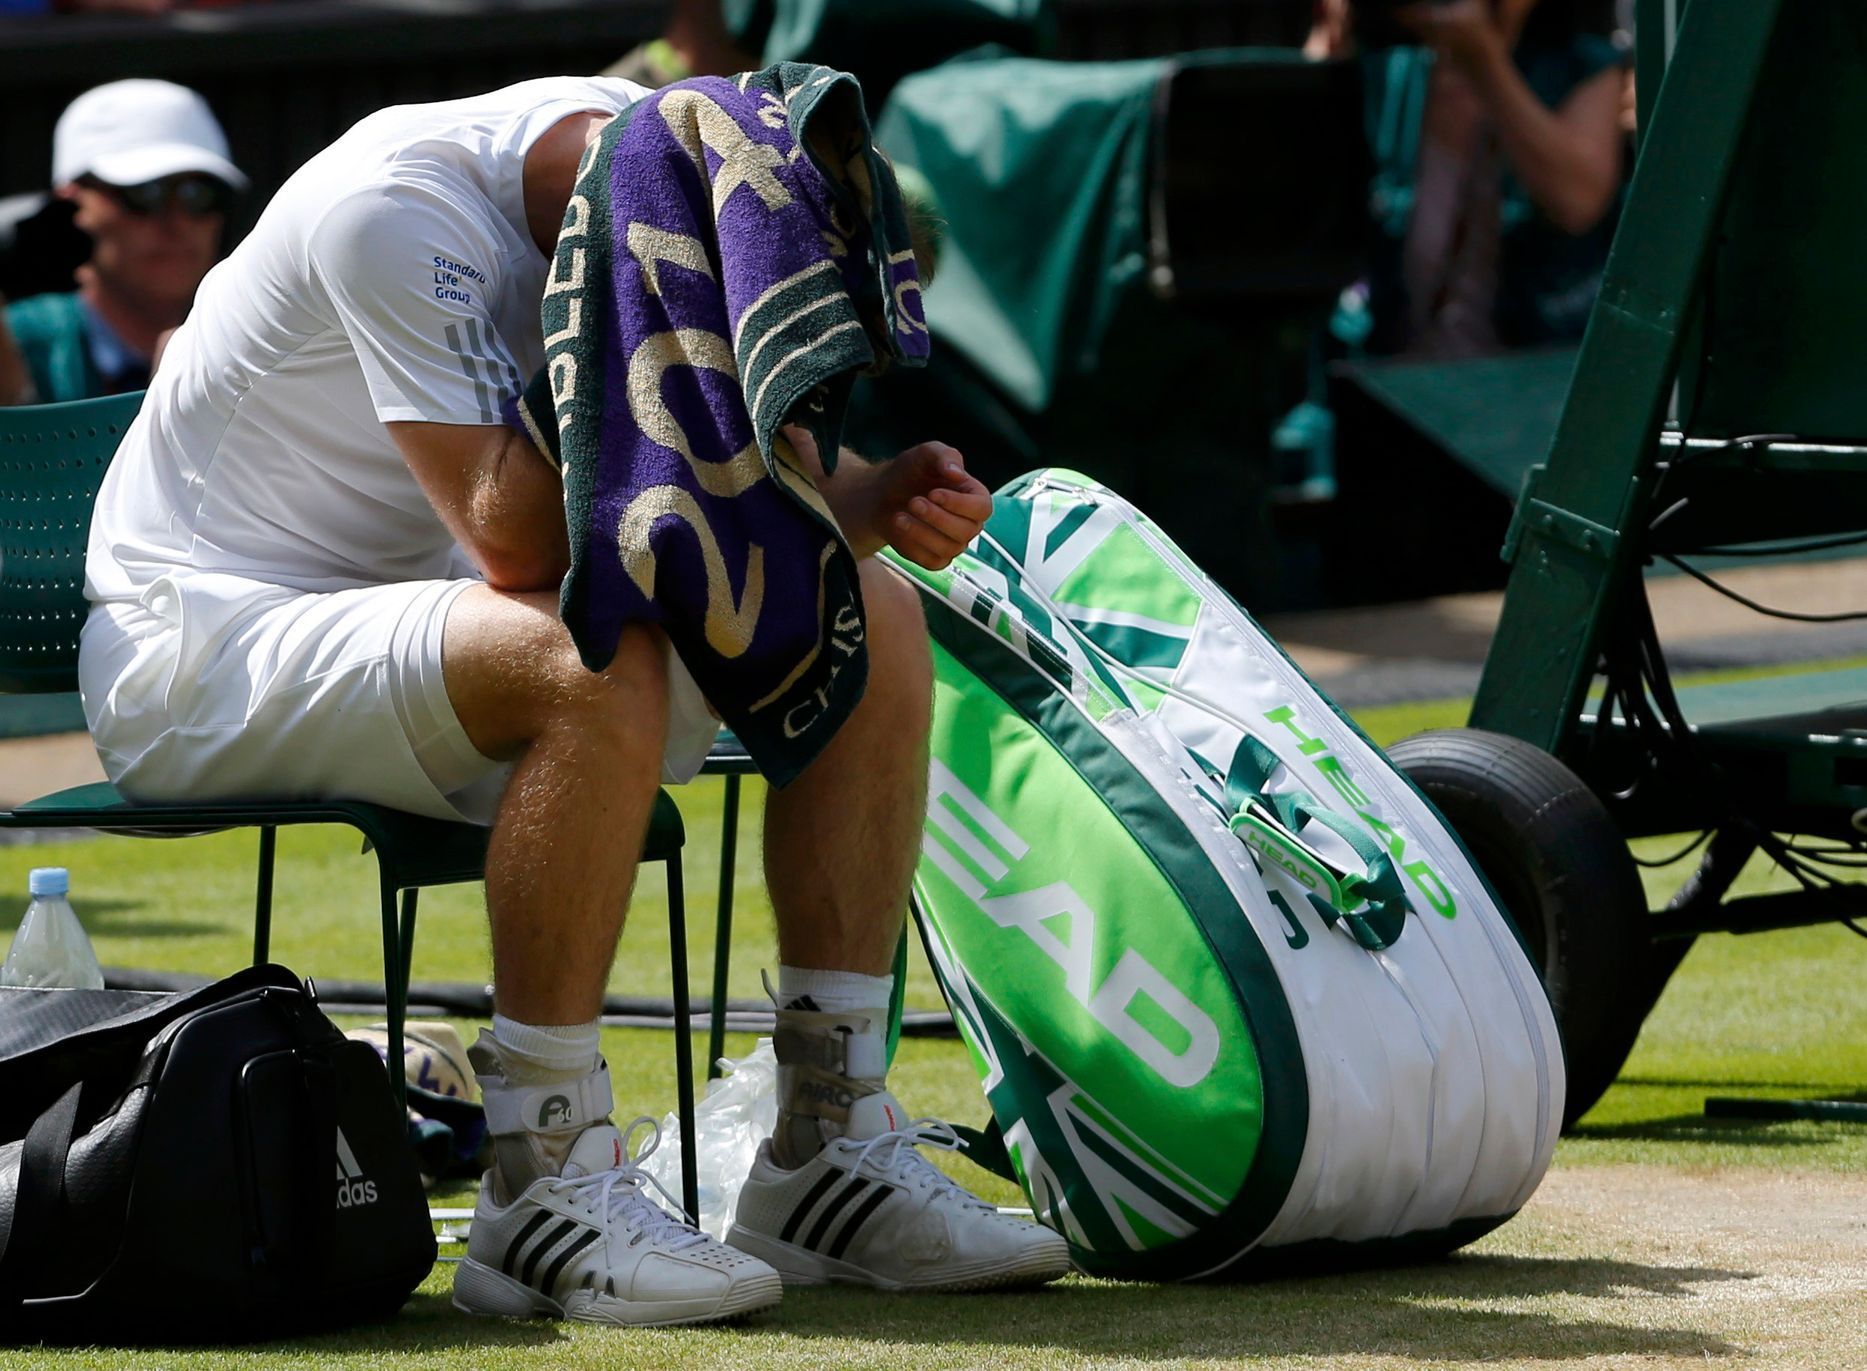 Wimbledon 2014 (čtvrtfinále)